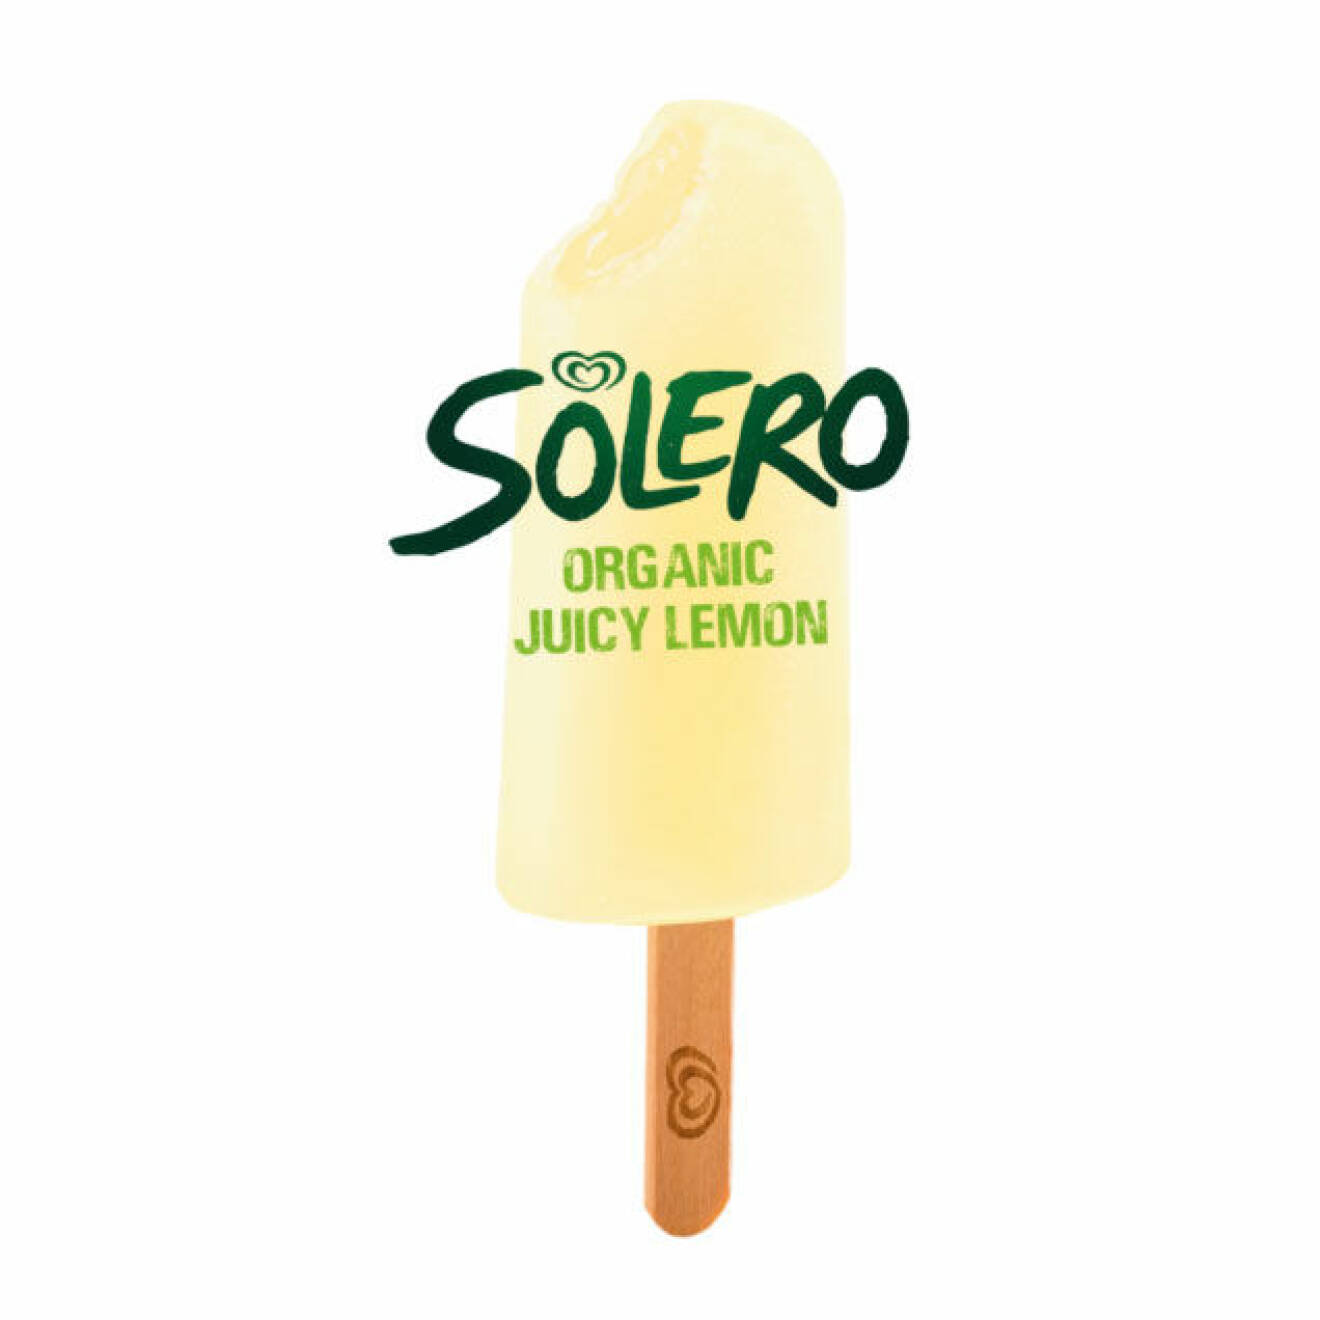 Solero i årets tappning - juicy lemon. 